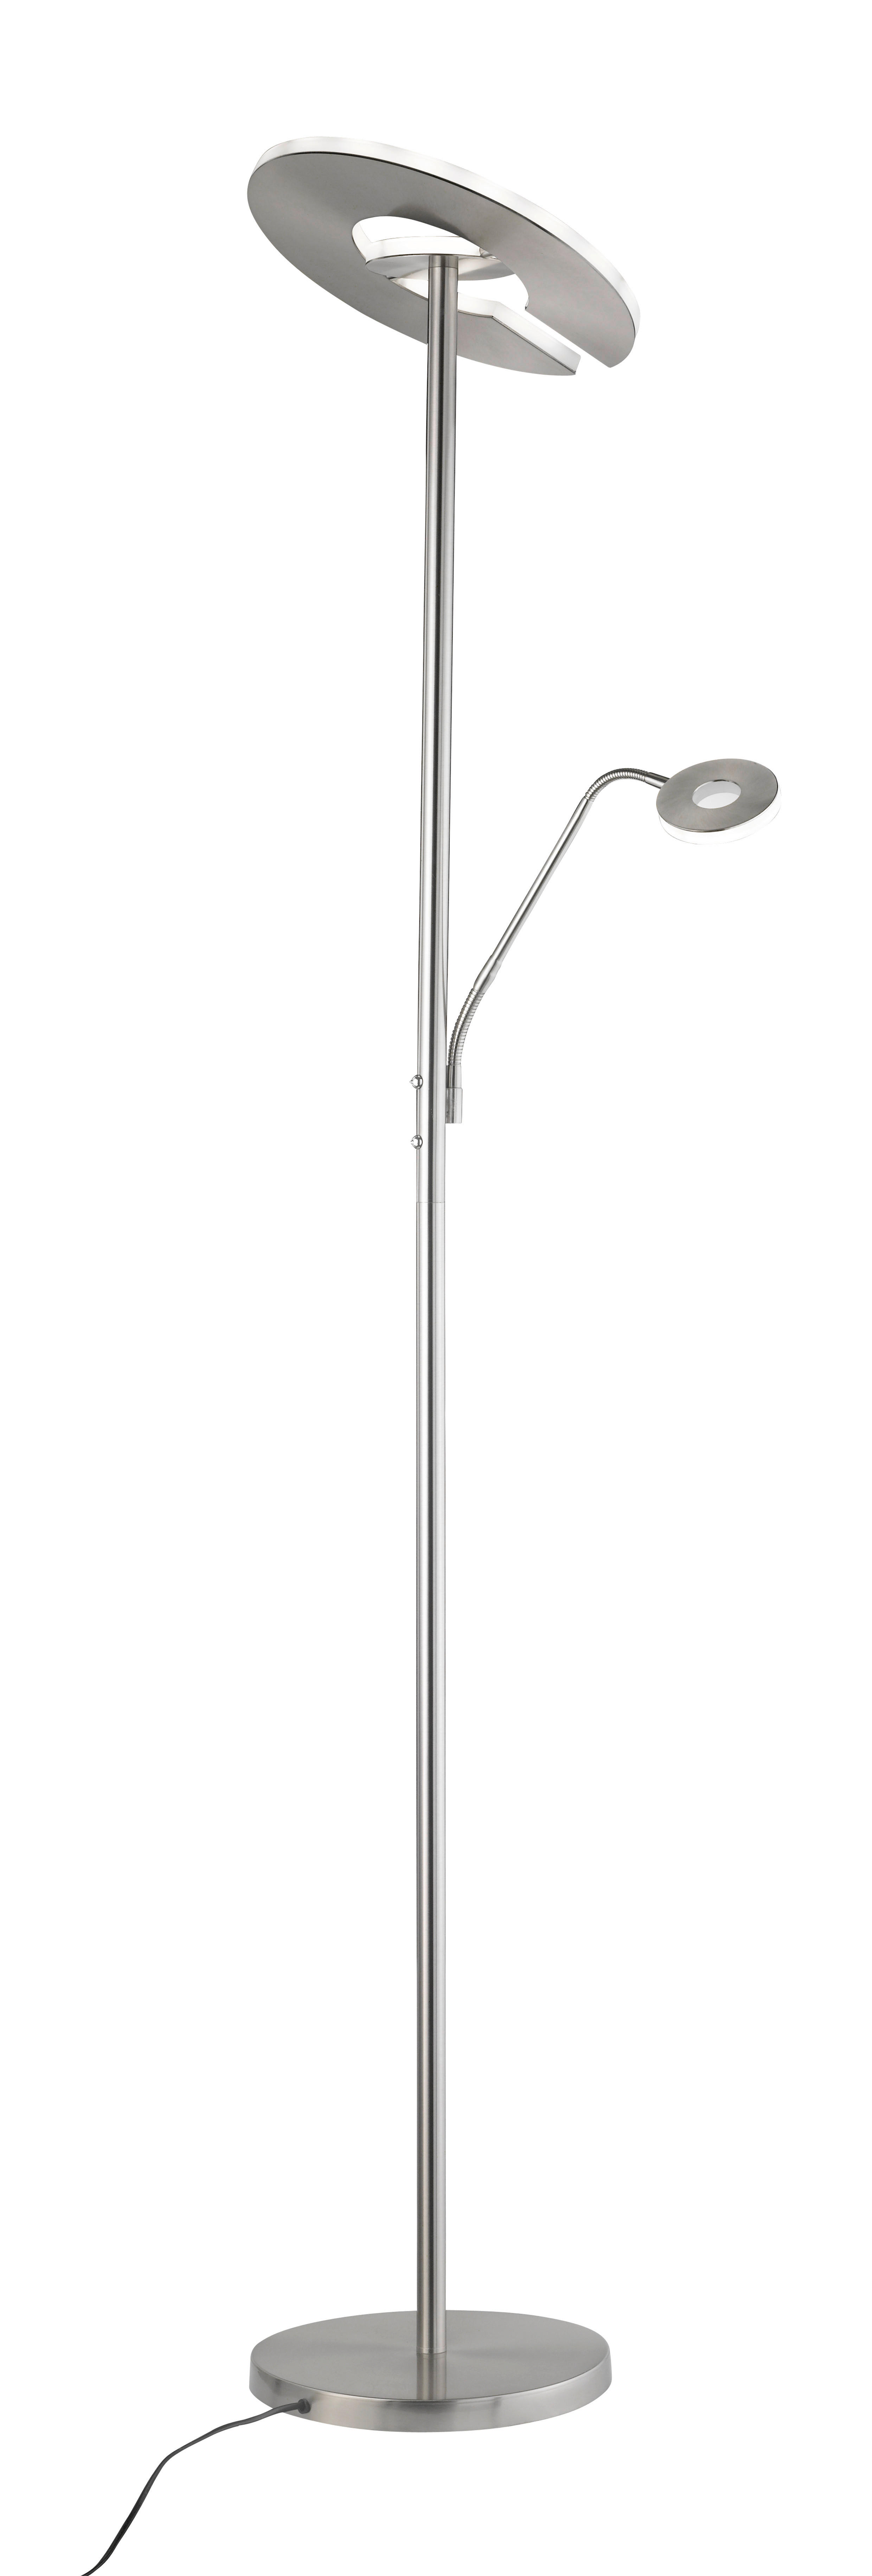 LED-STEHLEUCHTE 35/180 cm    - Weiß/Nickelfarben, Design, Metall (35/180cm)